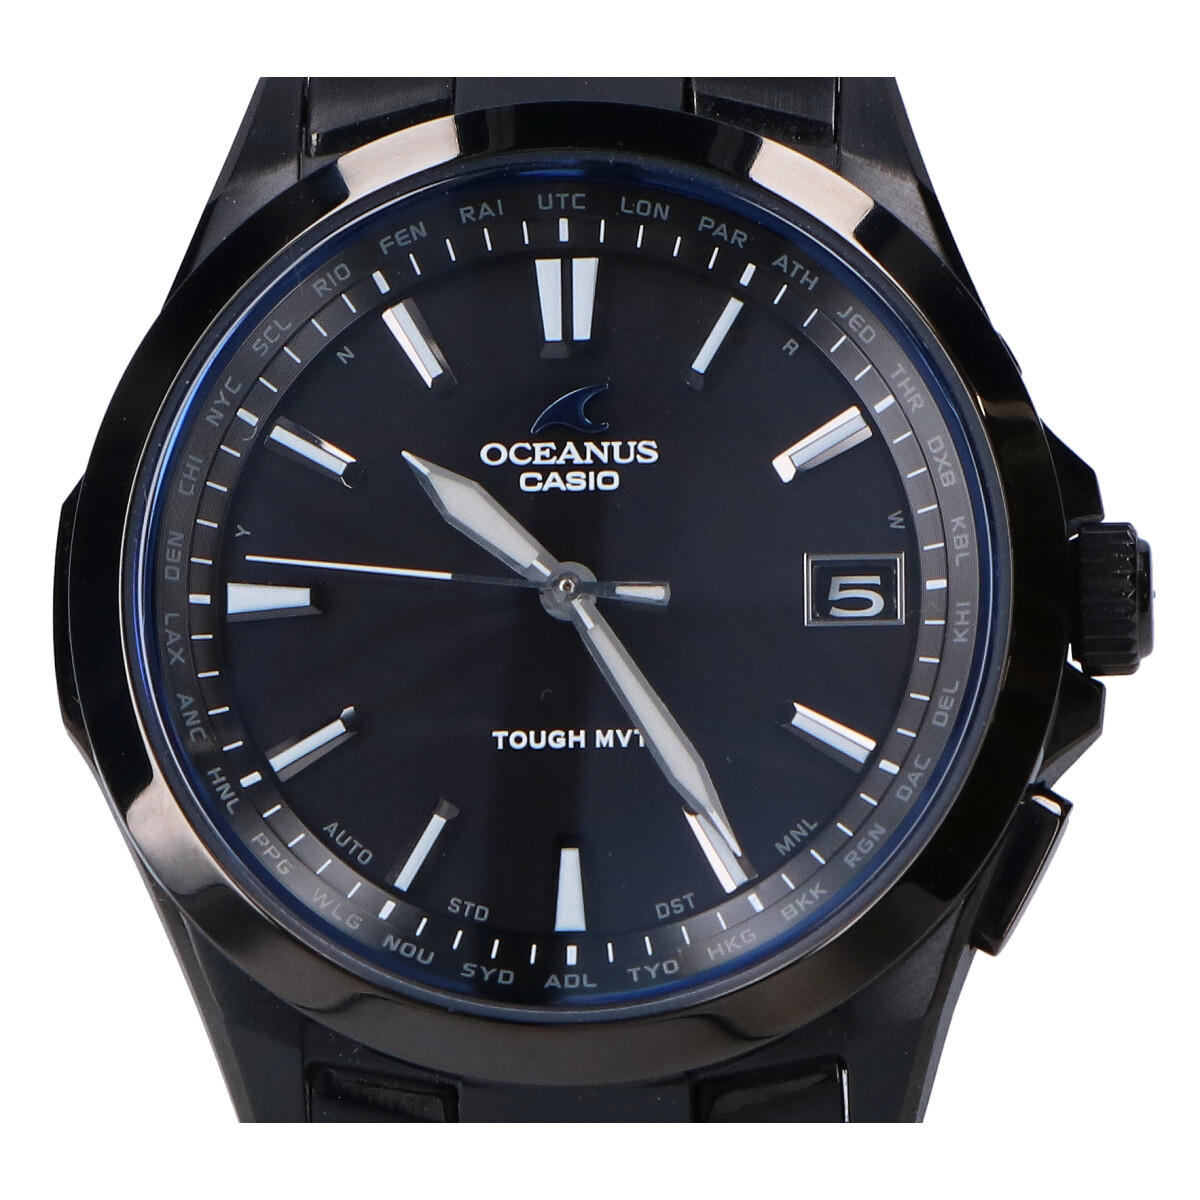 カシオのオシアナス S100B-1AJF 3hands model チタンベルト タフソーラー 時計の買取実績です。